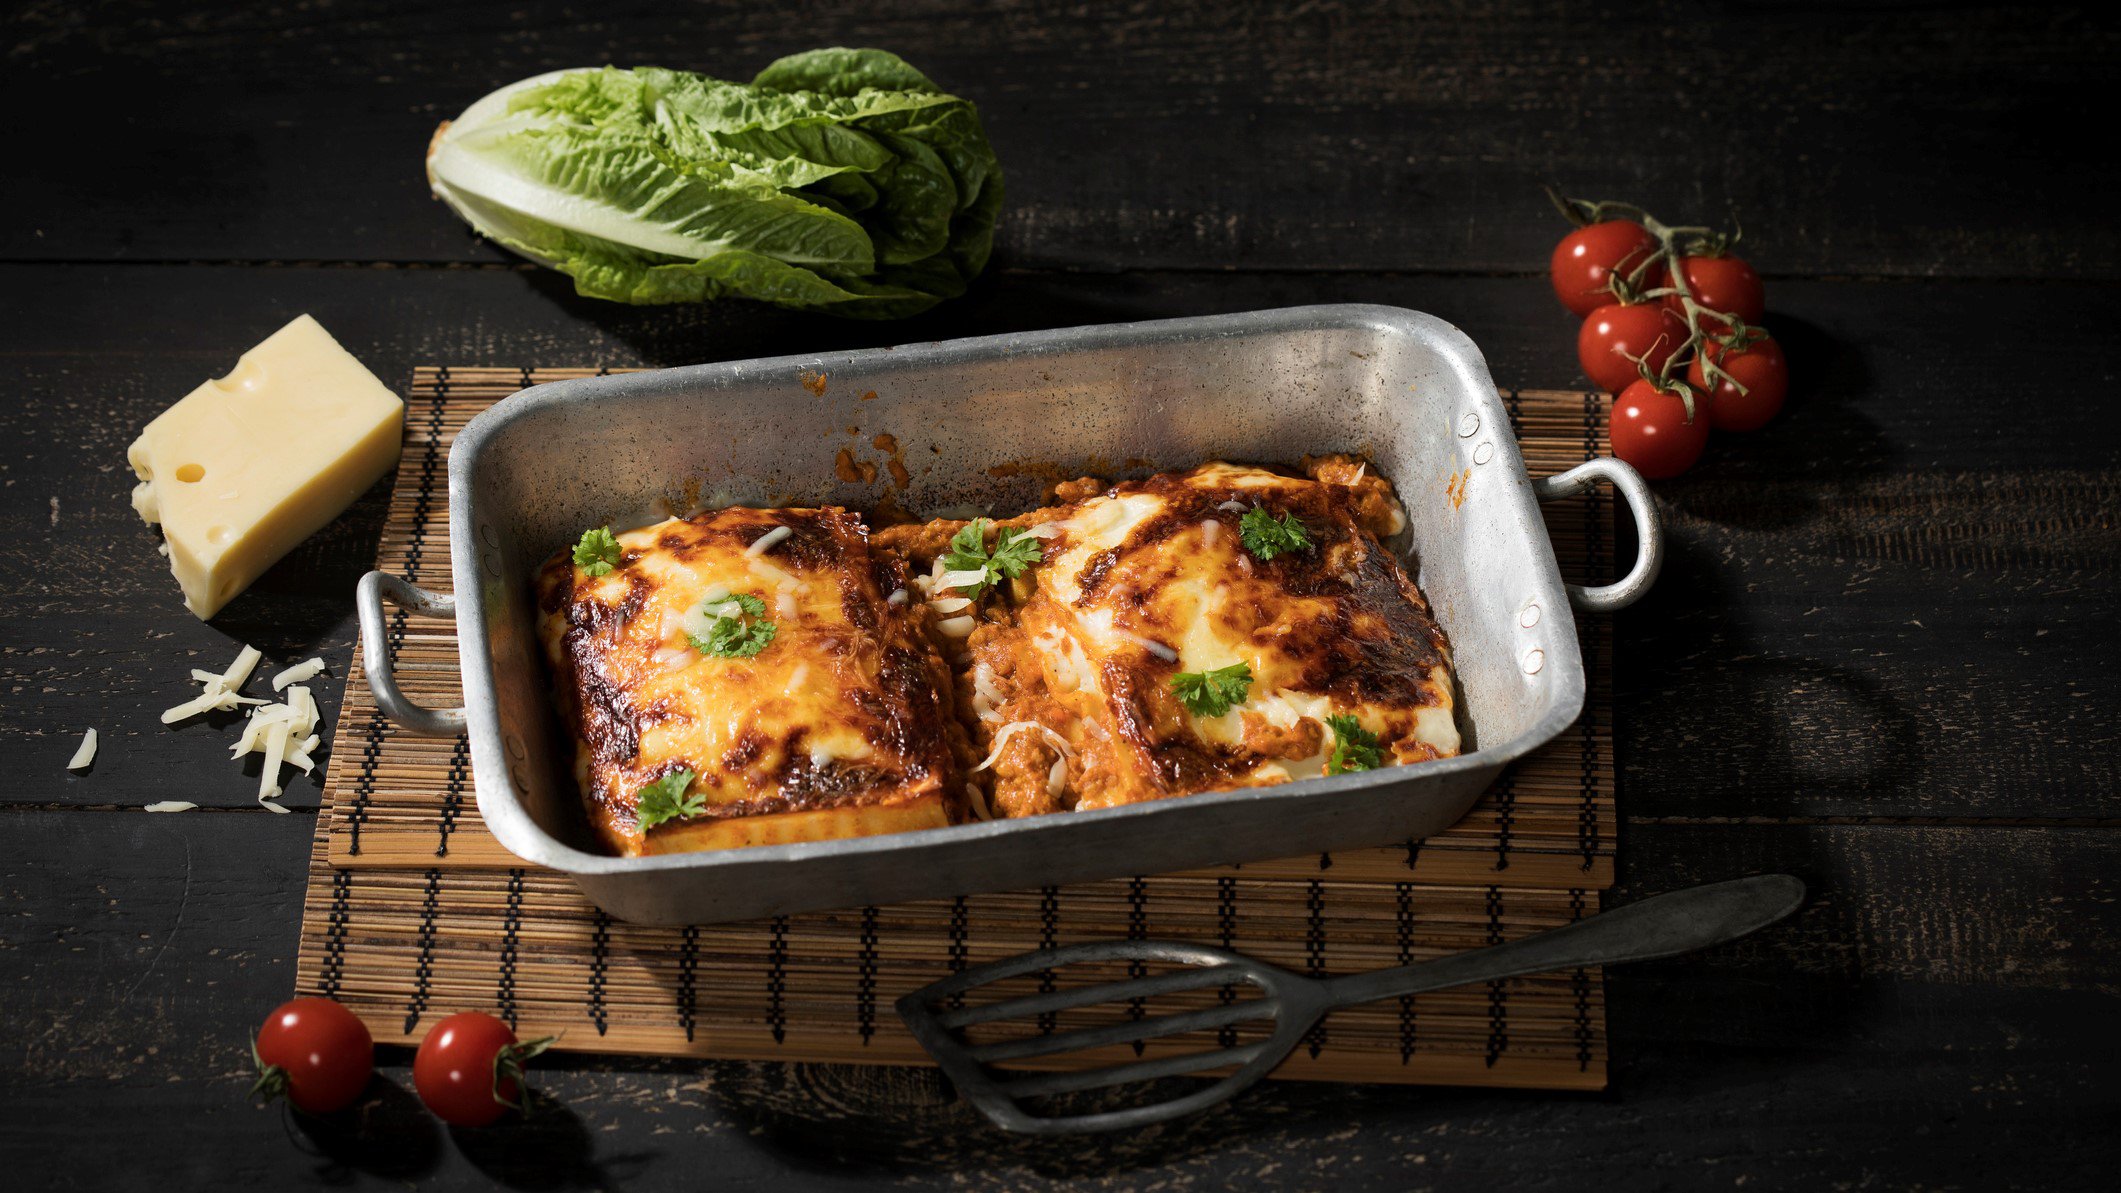 4-Käse-Lasagne mit Knoblauch-Ricottacreme und Parmesan -Crumble in Kasserole auf Bast auf dunklem Untergrund. Im Bild ein Stück Parmesan, einige Tomaten und Salatherz. Draufsicht.